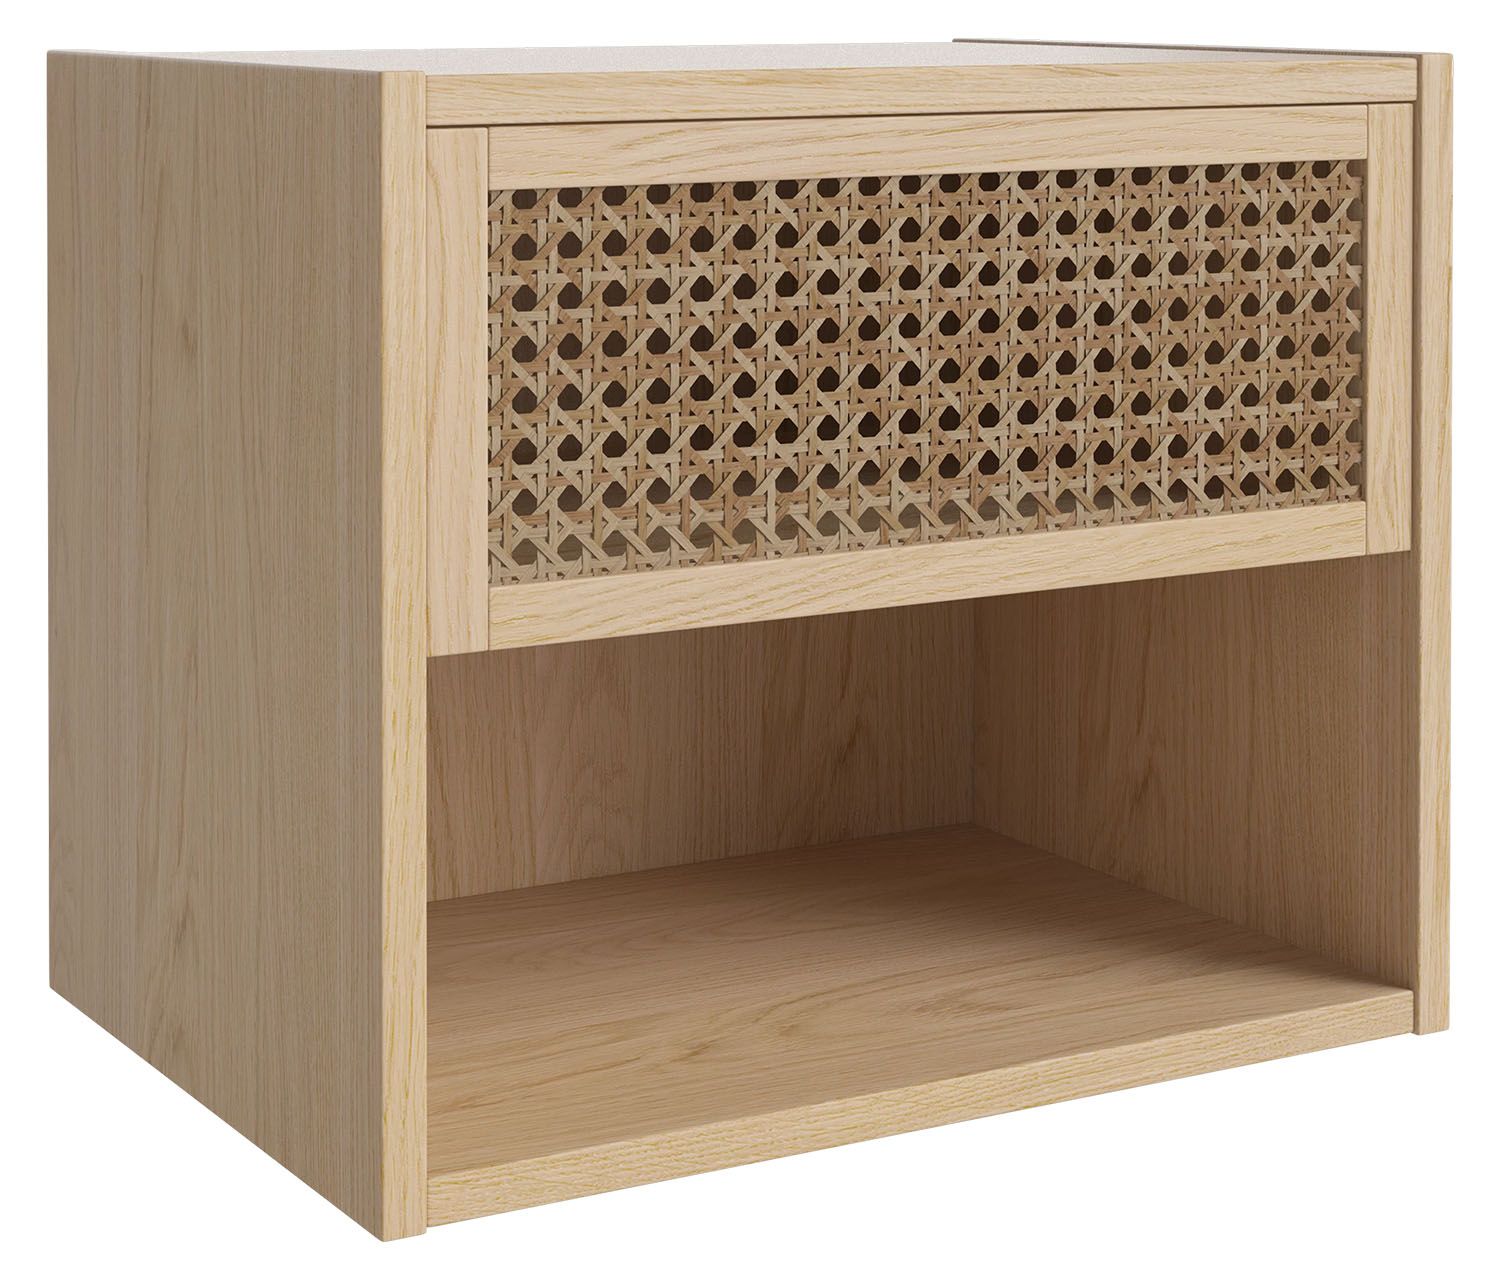 Bolia designové noční stolky Cana Bedside Table (výška 36 cm) - DESIGNPROPAGANDA